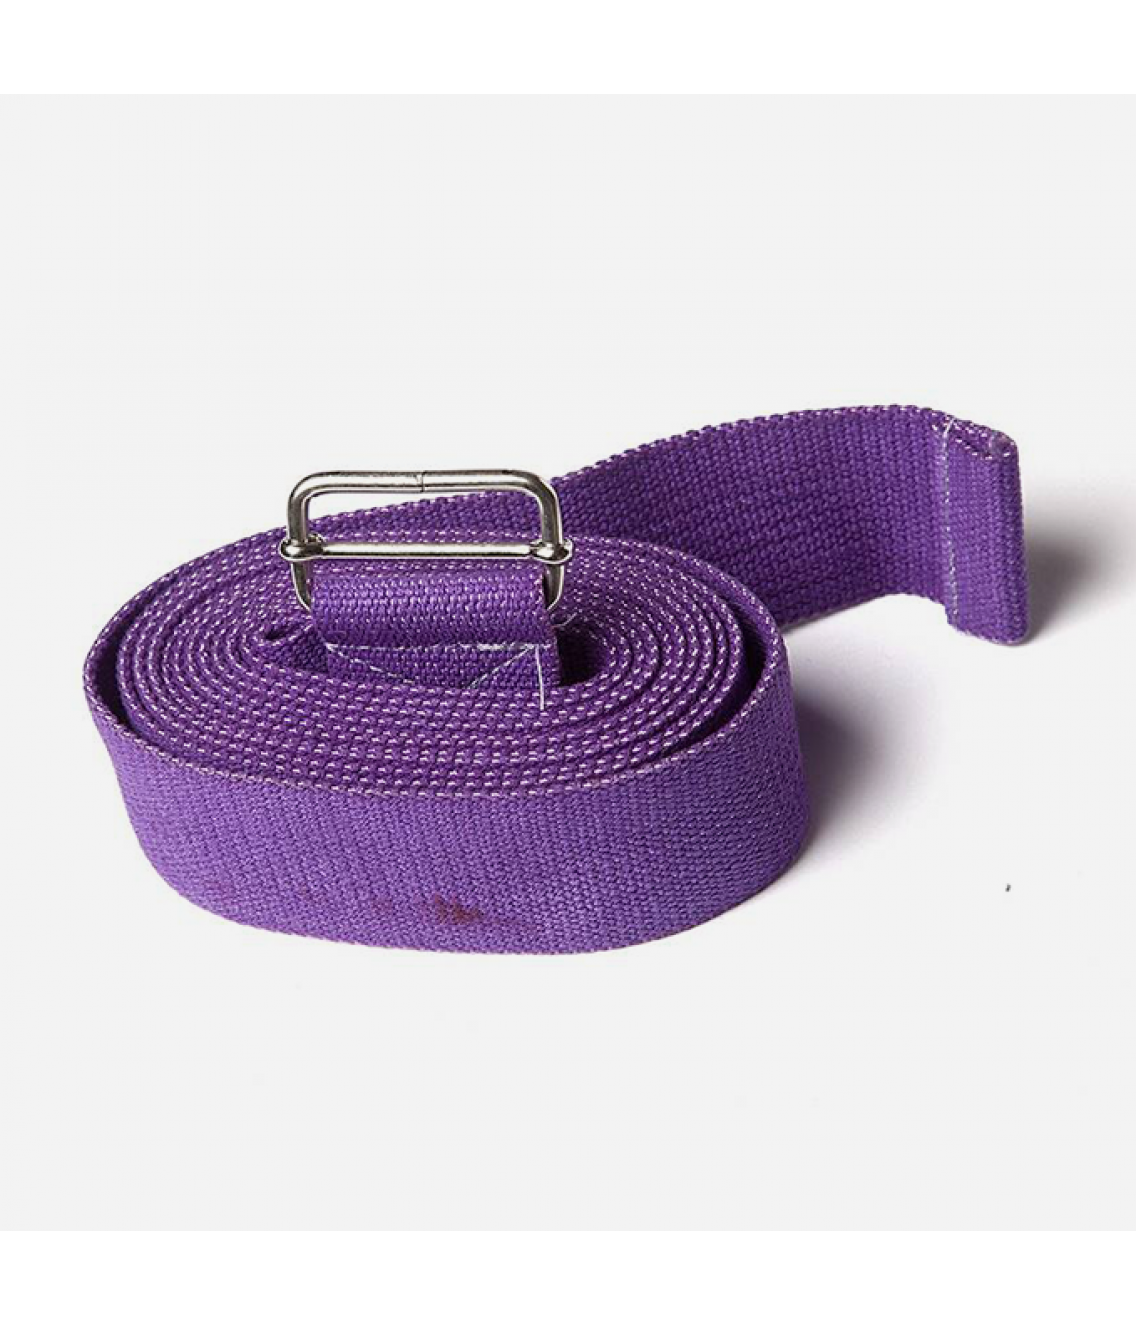 Ремень для йоги из хлопка 270см 4см фиолетовый